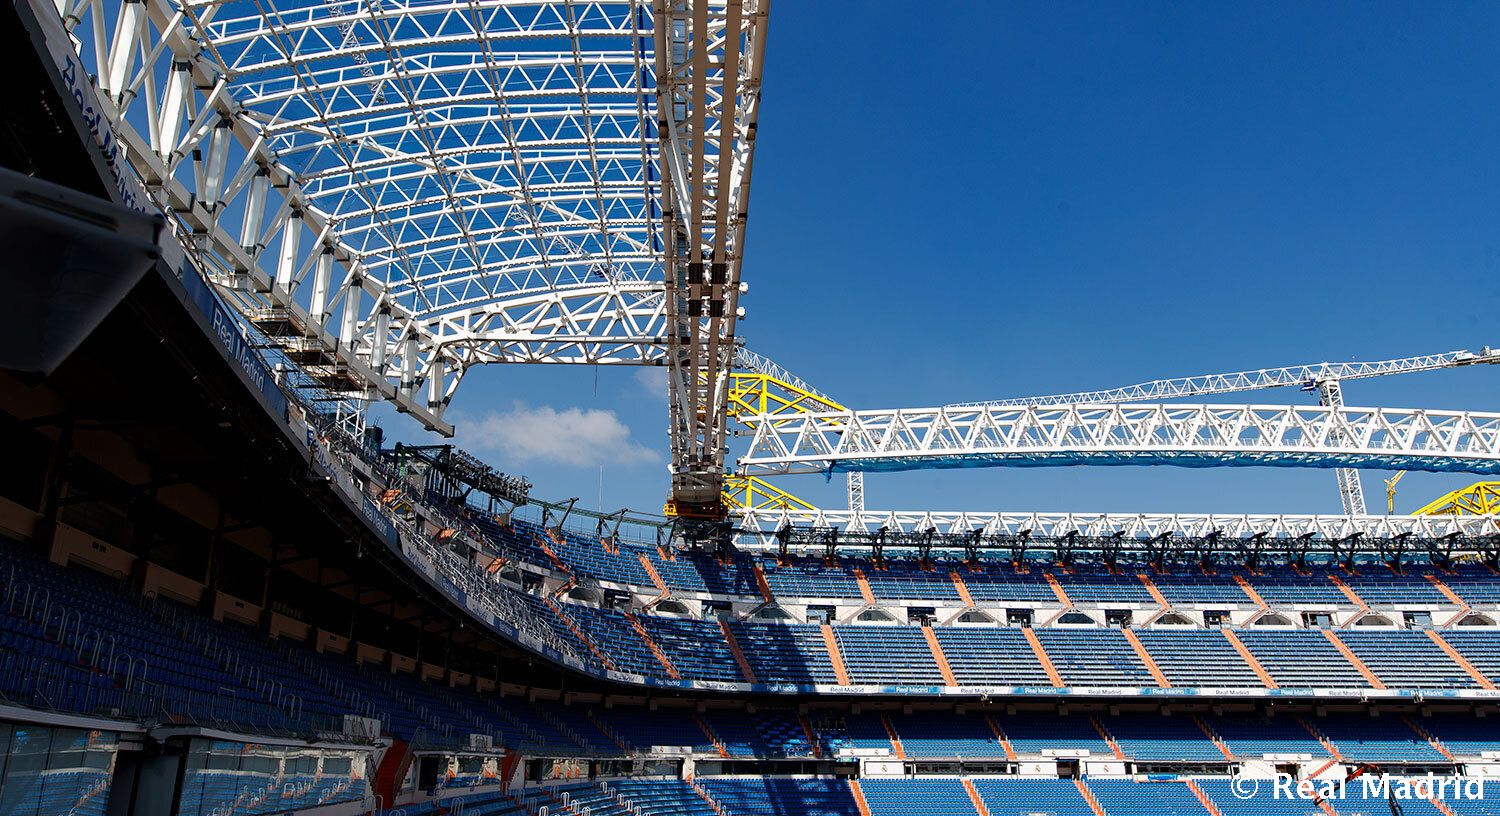 Las obras del nuevo Santiago Bernabéu, desde el aire y a pie de campo